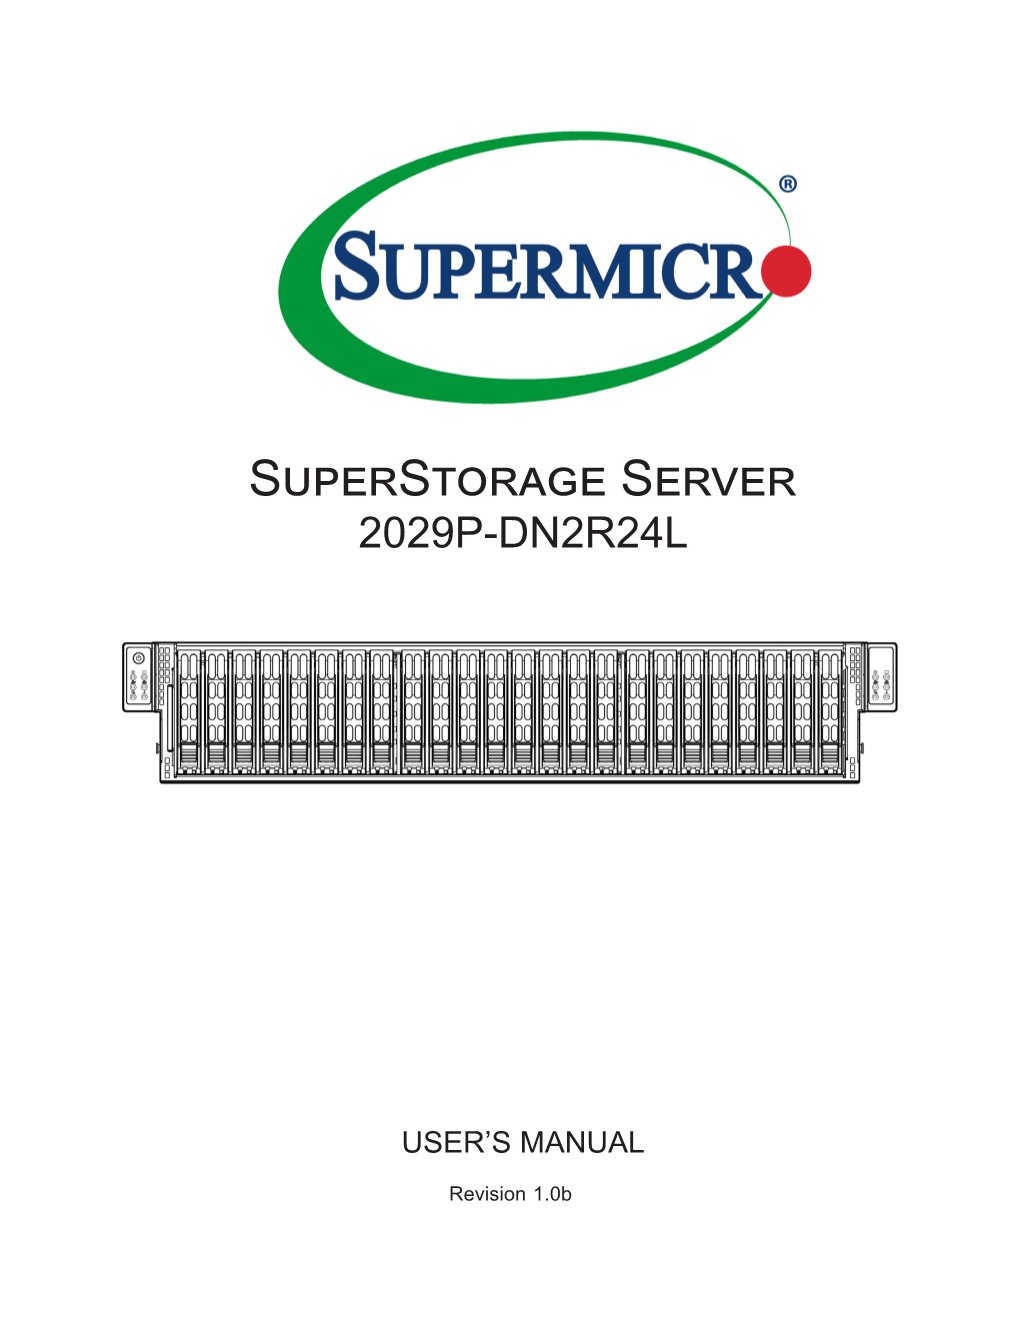 Superstorage Server 2029P-DN2R24L